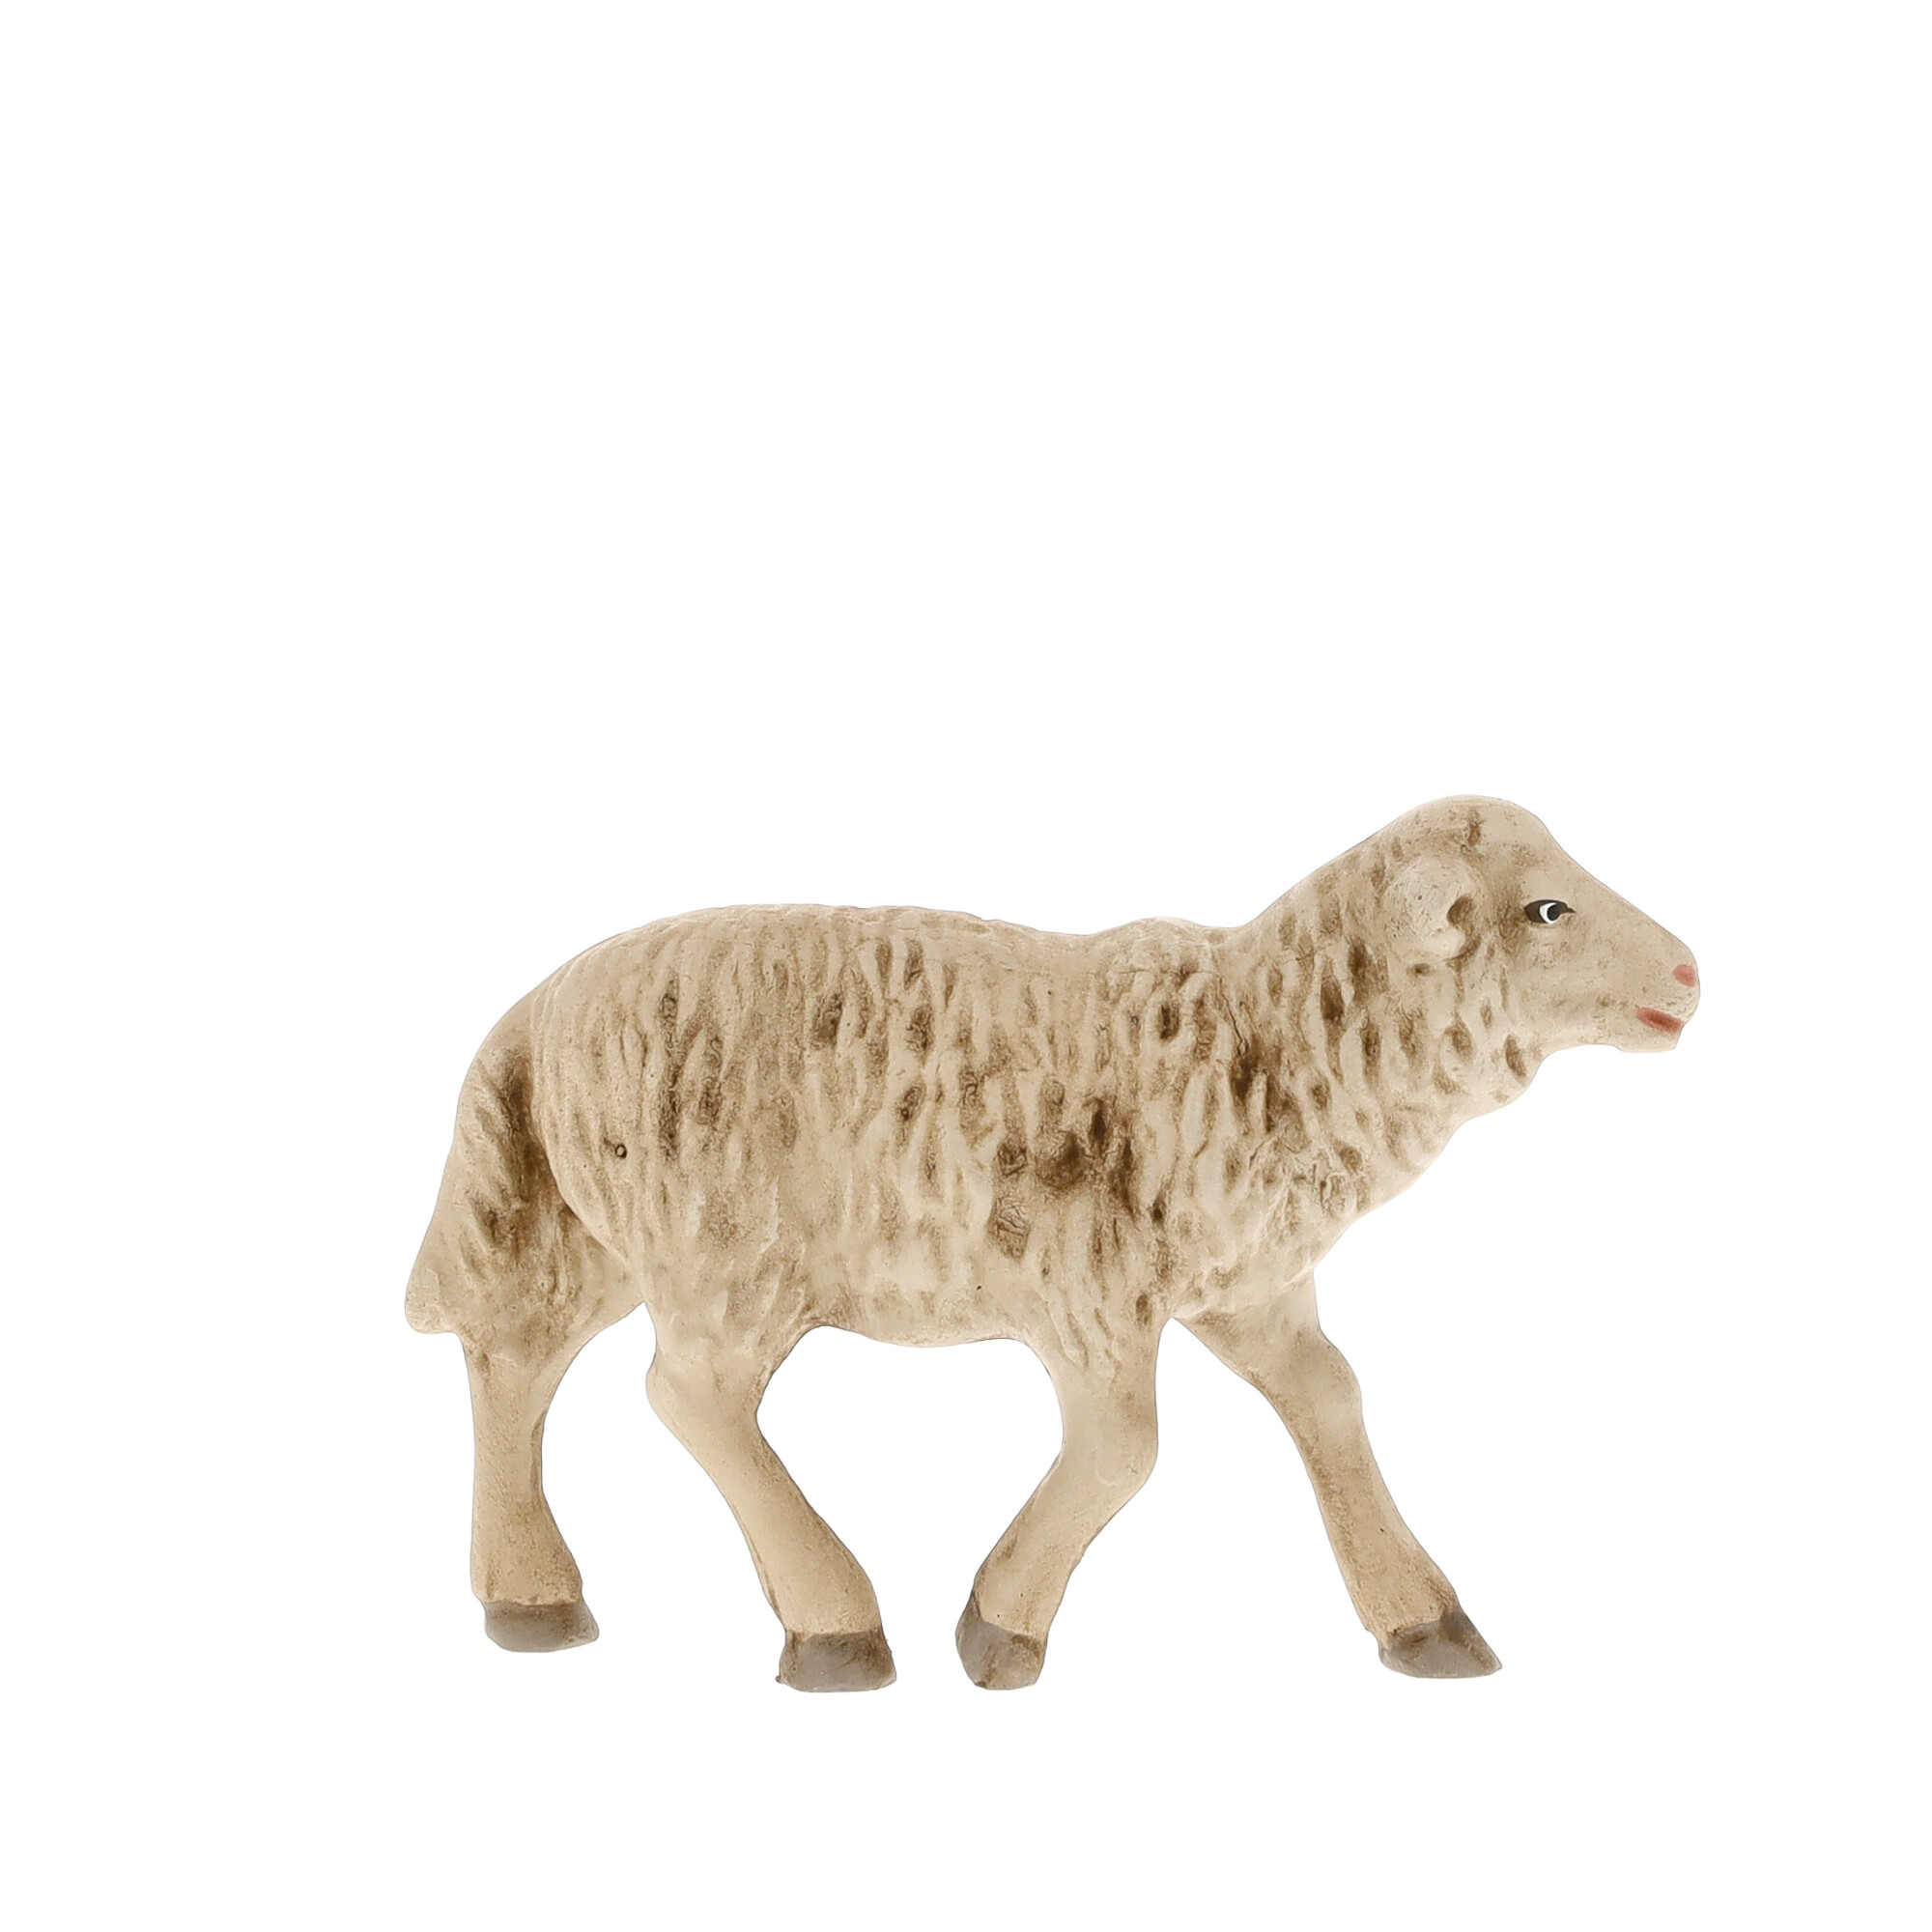 Schaf geradeaus blickend, zu 11 - 12cm Figuren - MAROLIN Krippenfigur